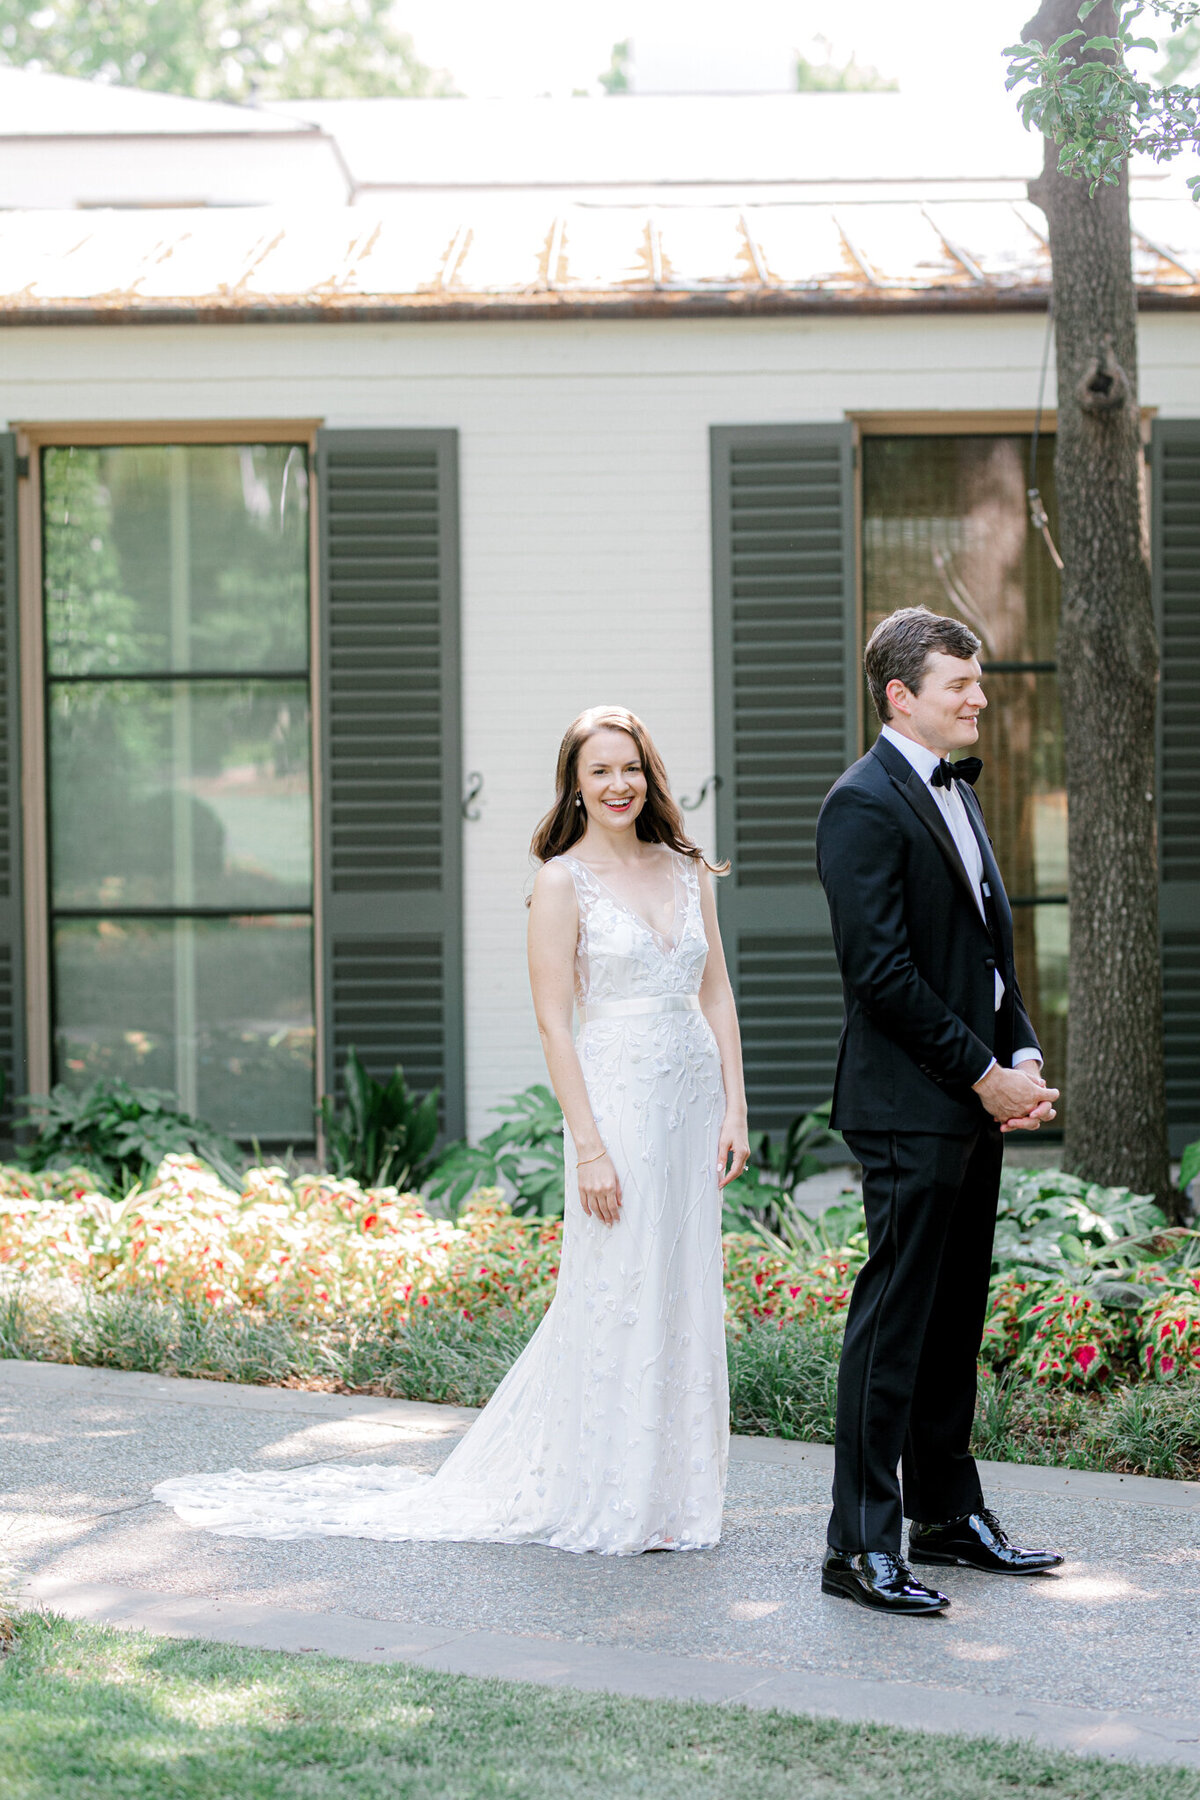 Gena & Matt's Wedding at the Dallas Arboretum | Dallas Wedding Photographer | Sami Kathryn Photography-62